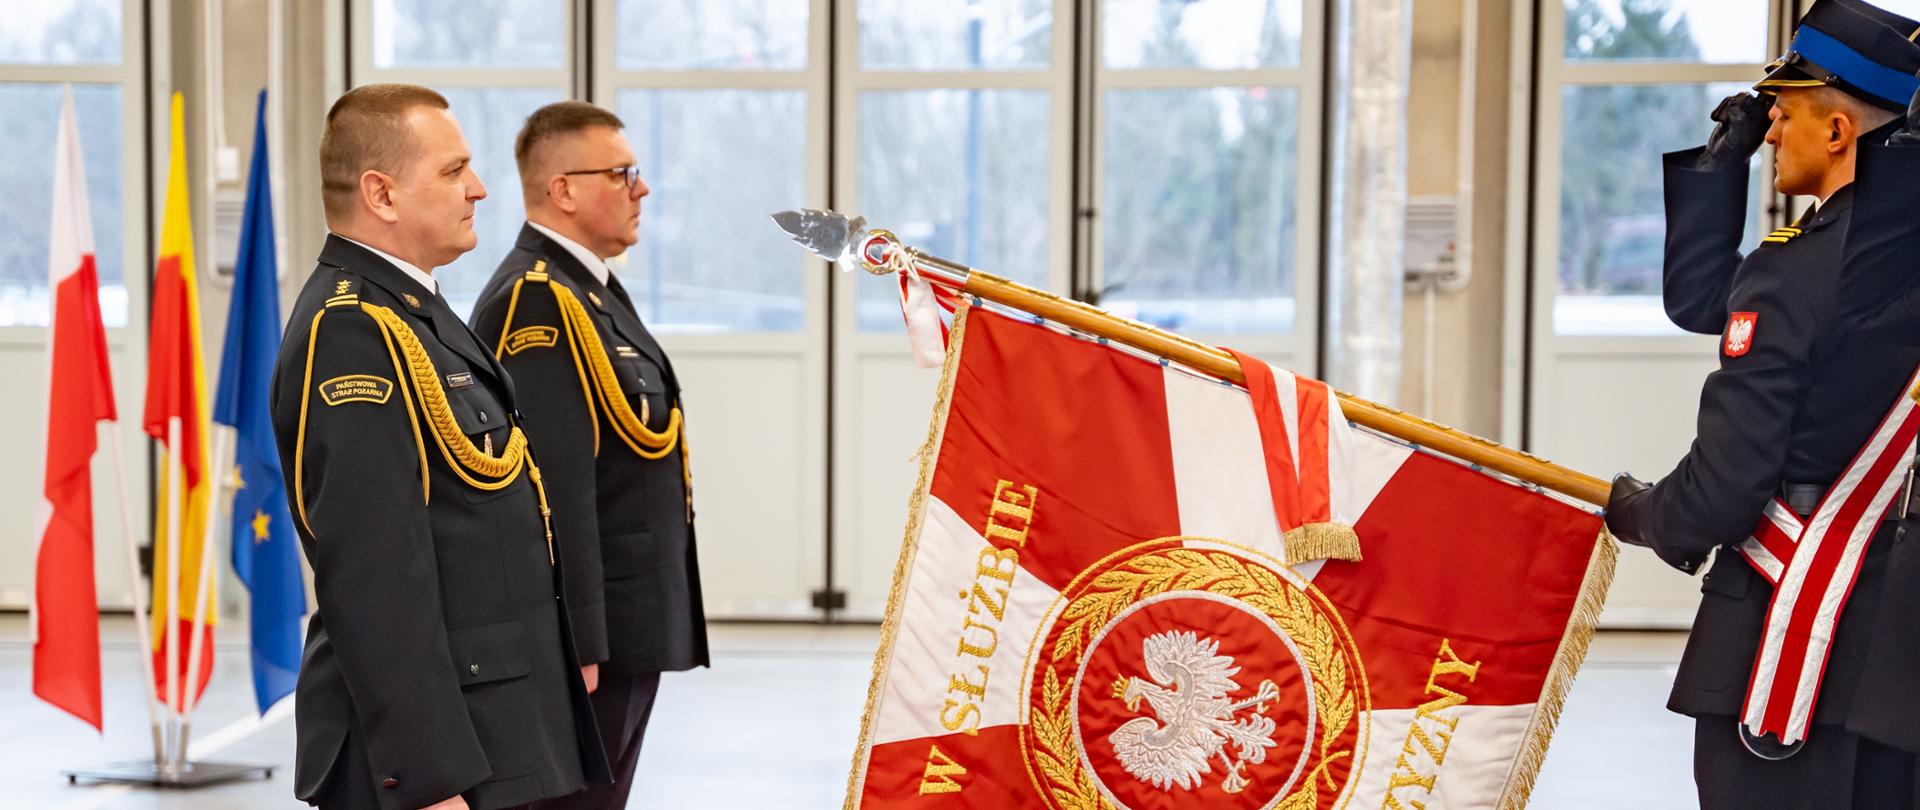 komendant miejski PSP w Łodzi oraz zastępca komendanta miejskiego PSP w Łodzi przejmujący obowiązku służbowe stoją przed sztandarem na czerwonym dywanie